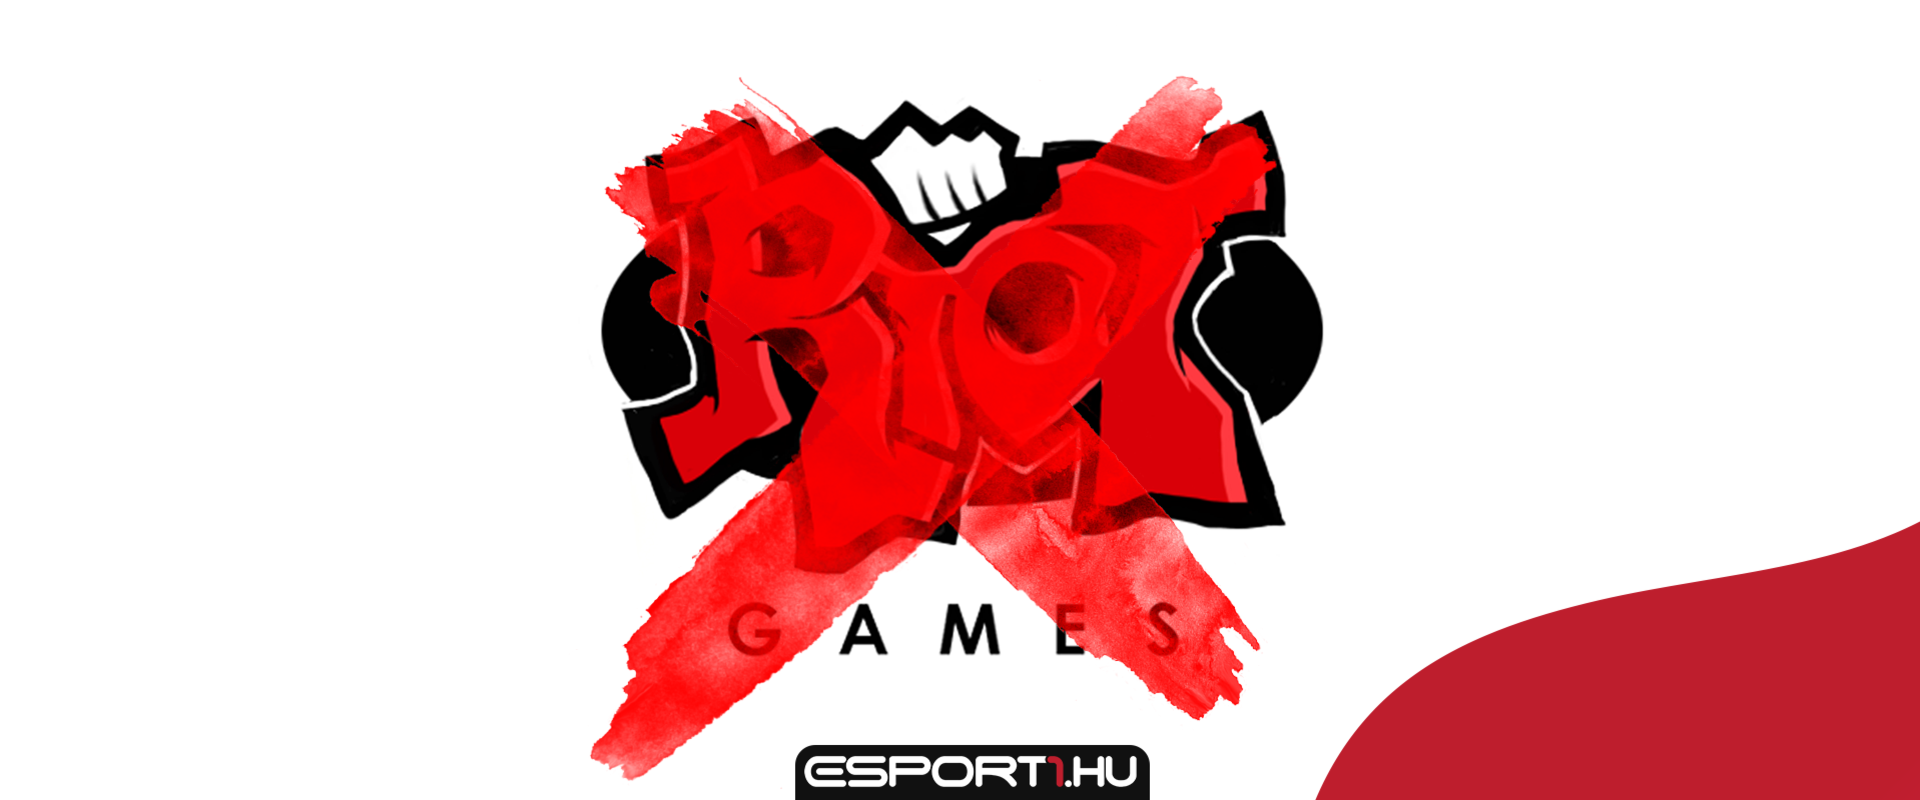 A Riot Games 12 év után váltott logót, érkezhet az új játék?